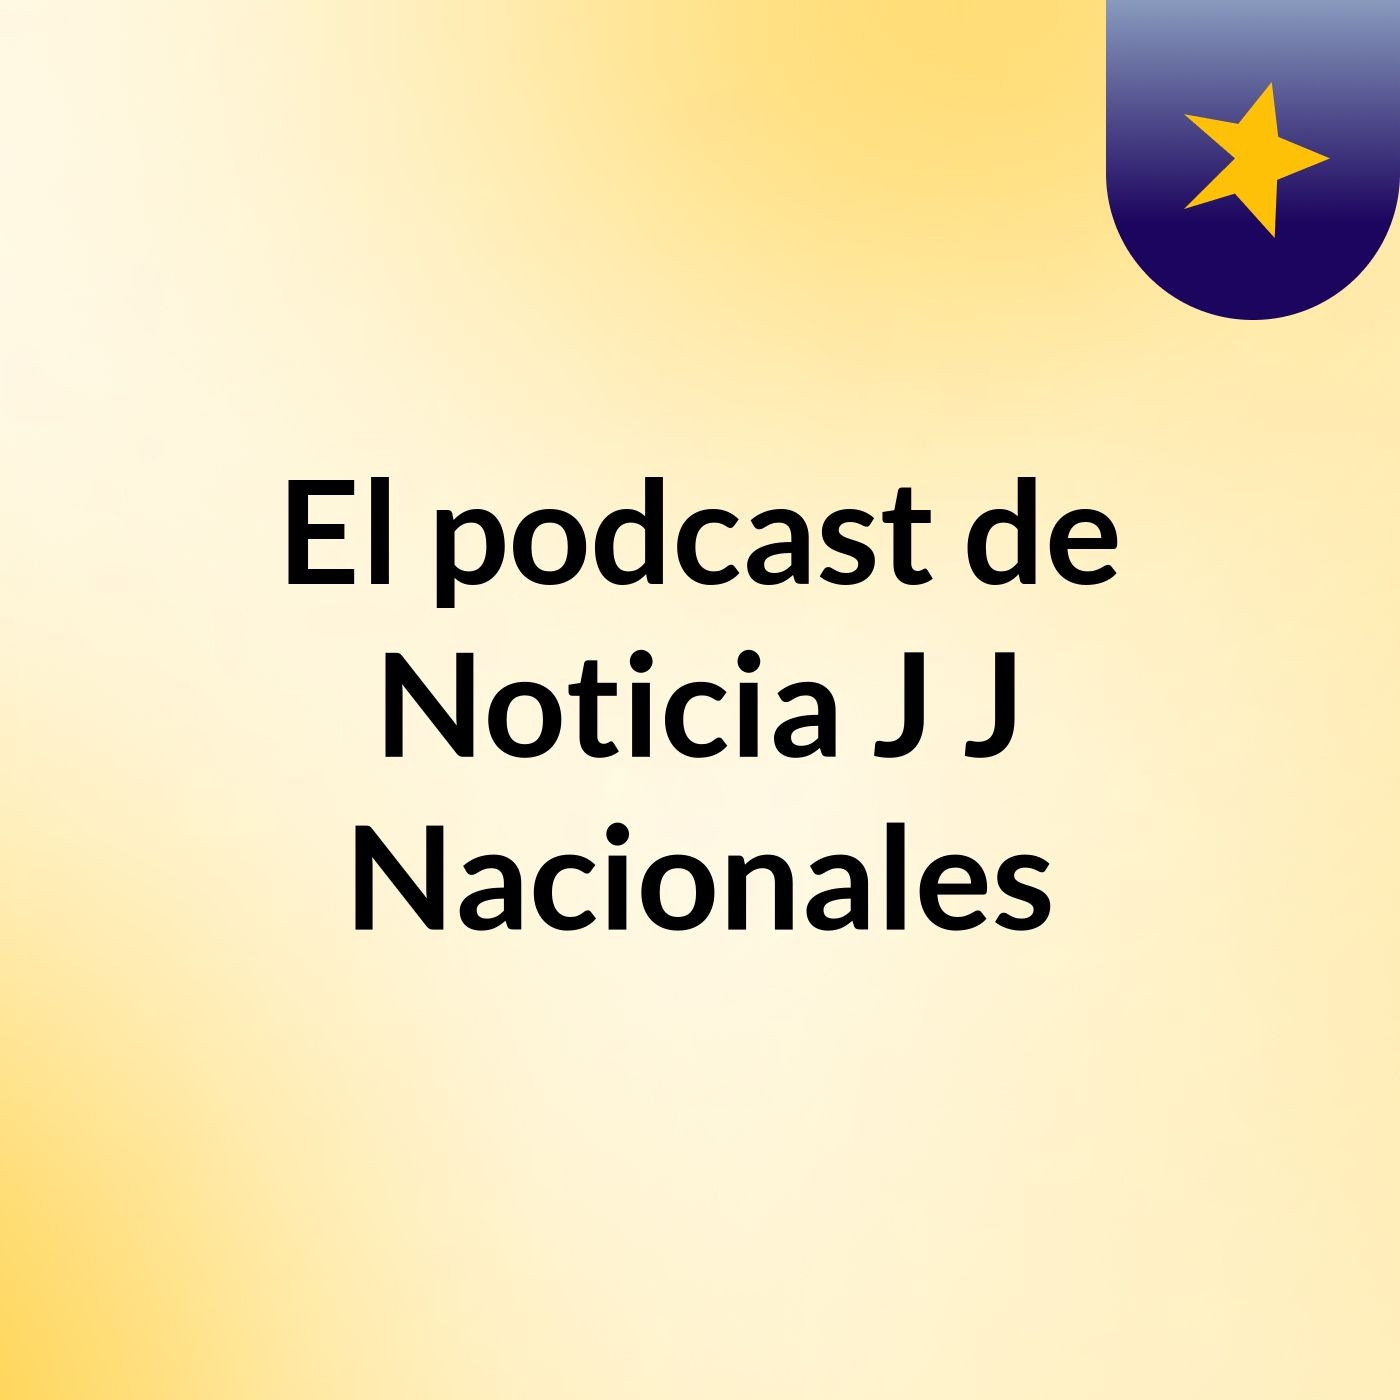 Episodio 6 - El podcast de Noticia J J Nacionales